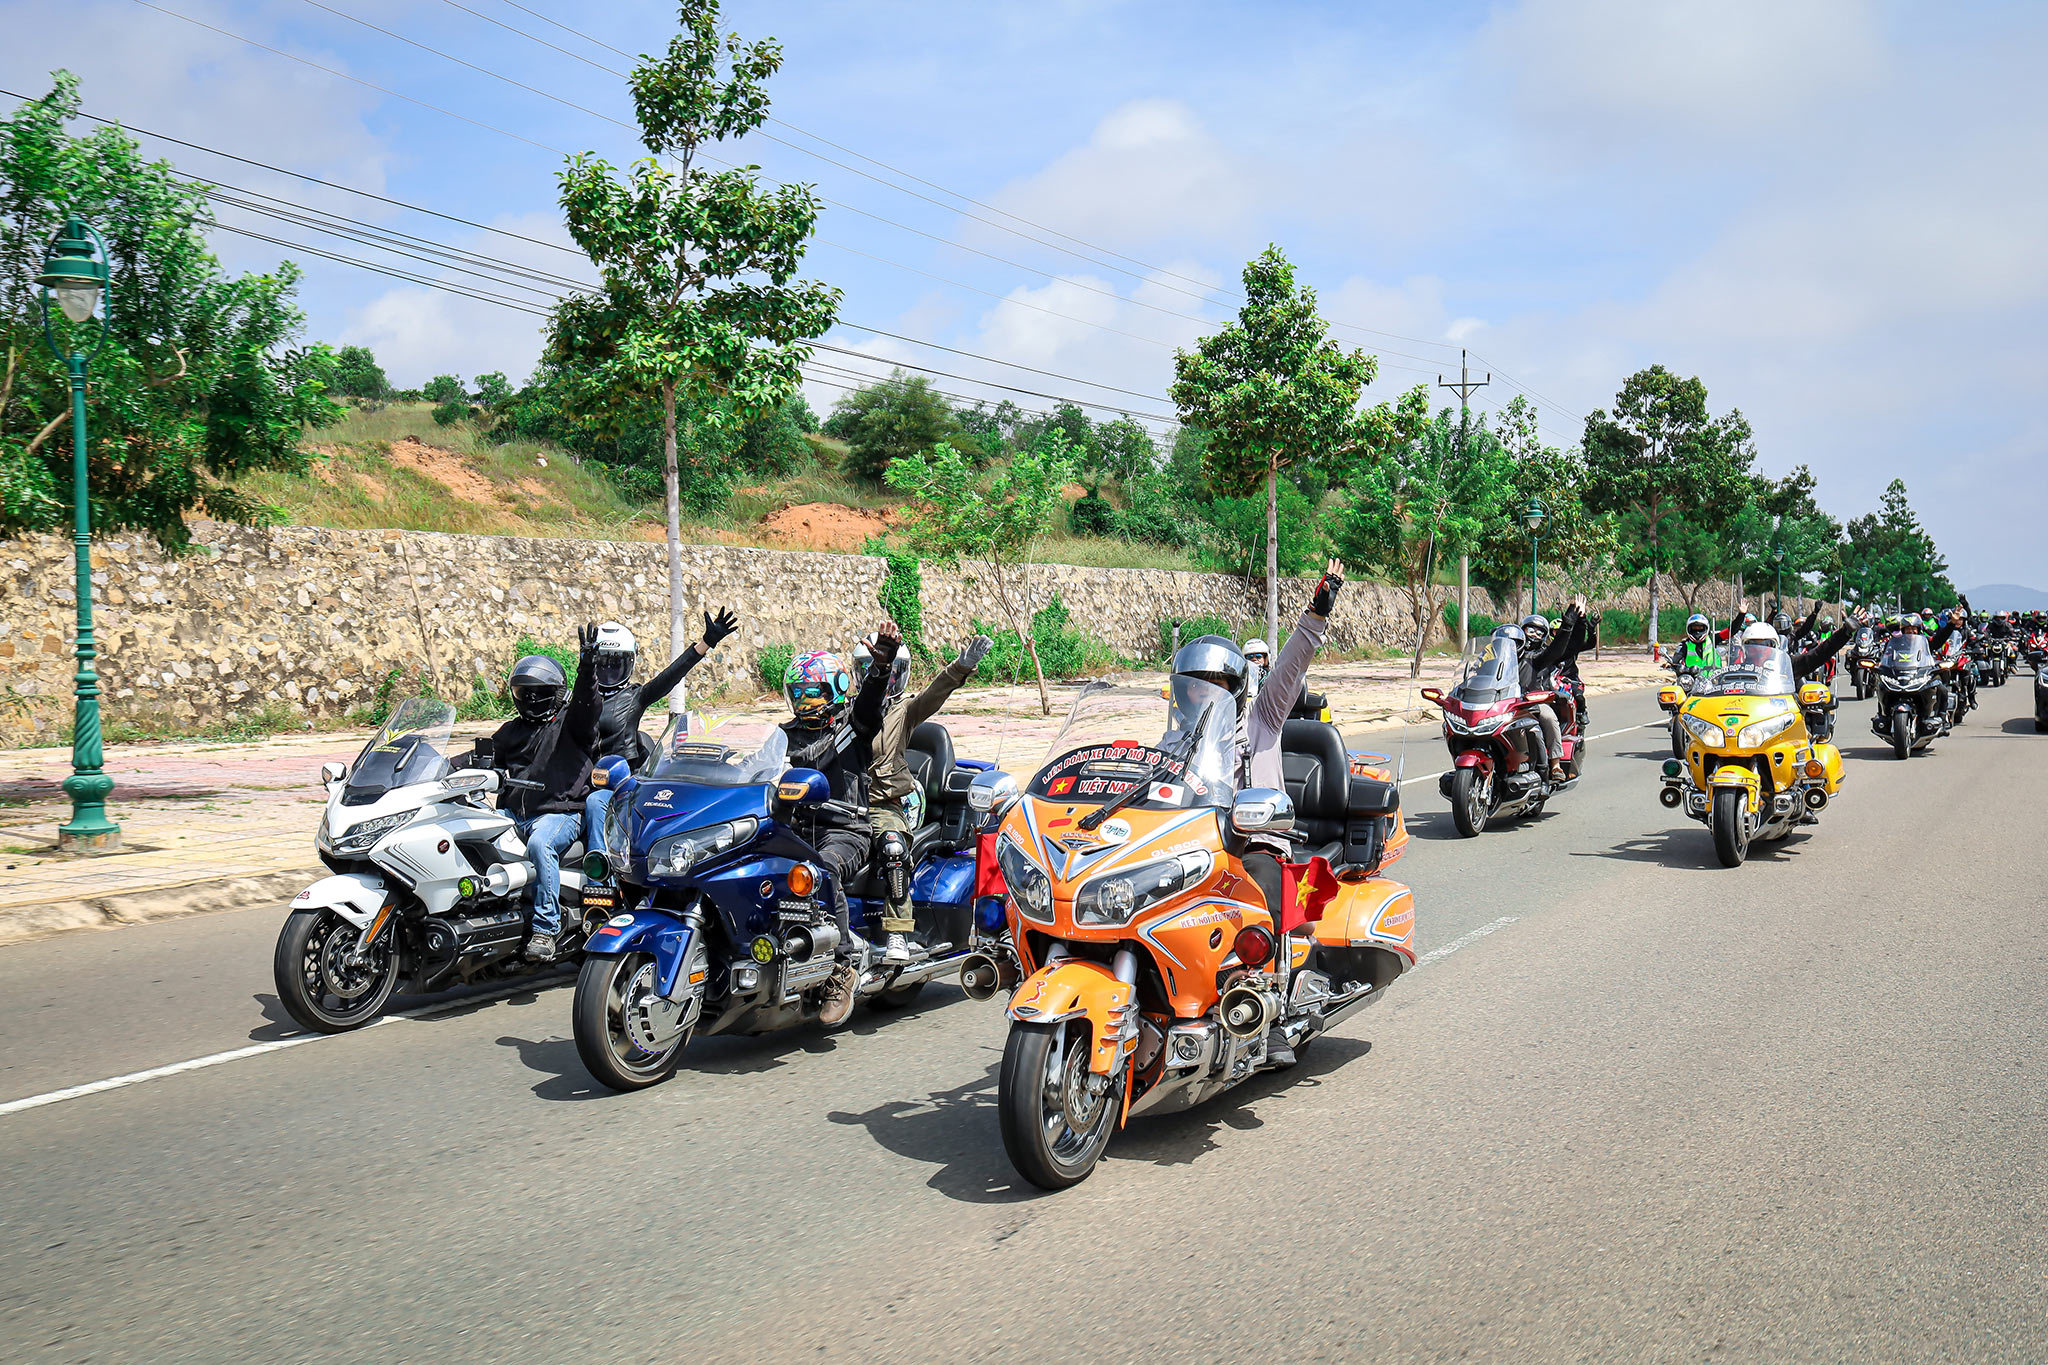 Đại hội Mô tô Honda 2020 (Hà Nội - Quảng Ninh) quy tụ gần 200 biker dai-hoi-honda-motor-2020-01133.jpg